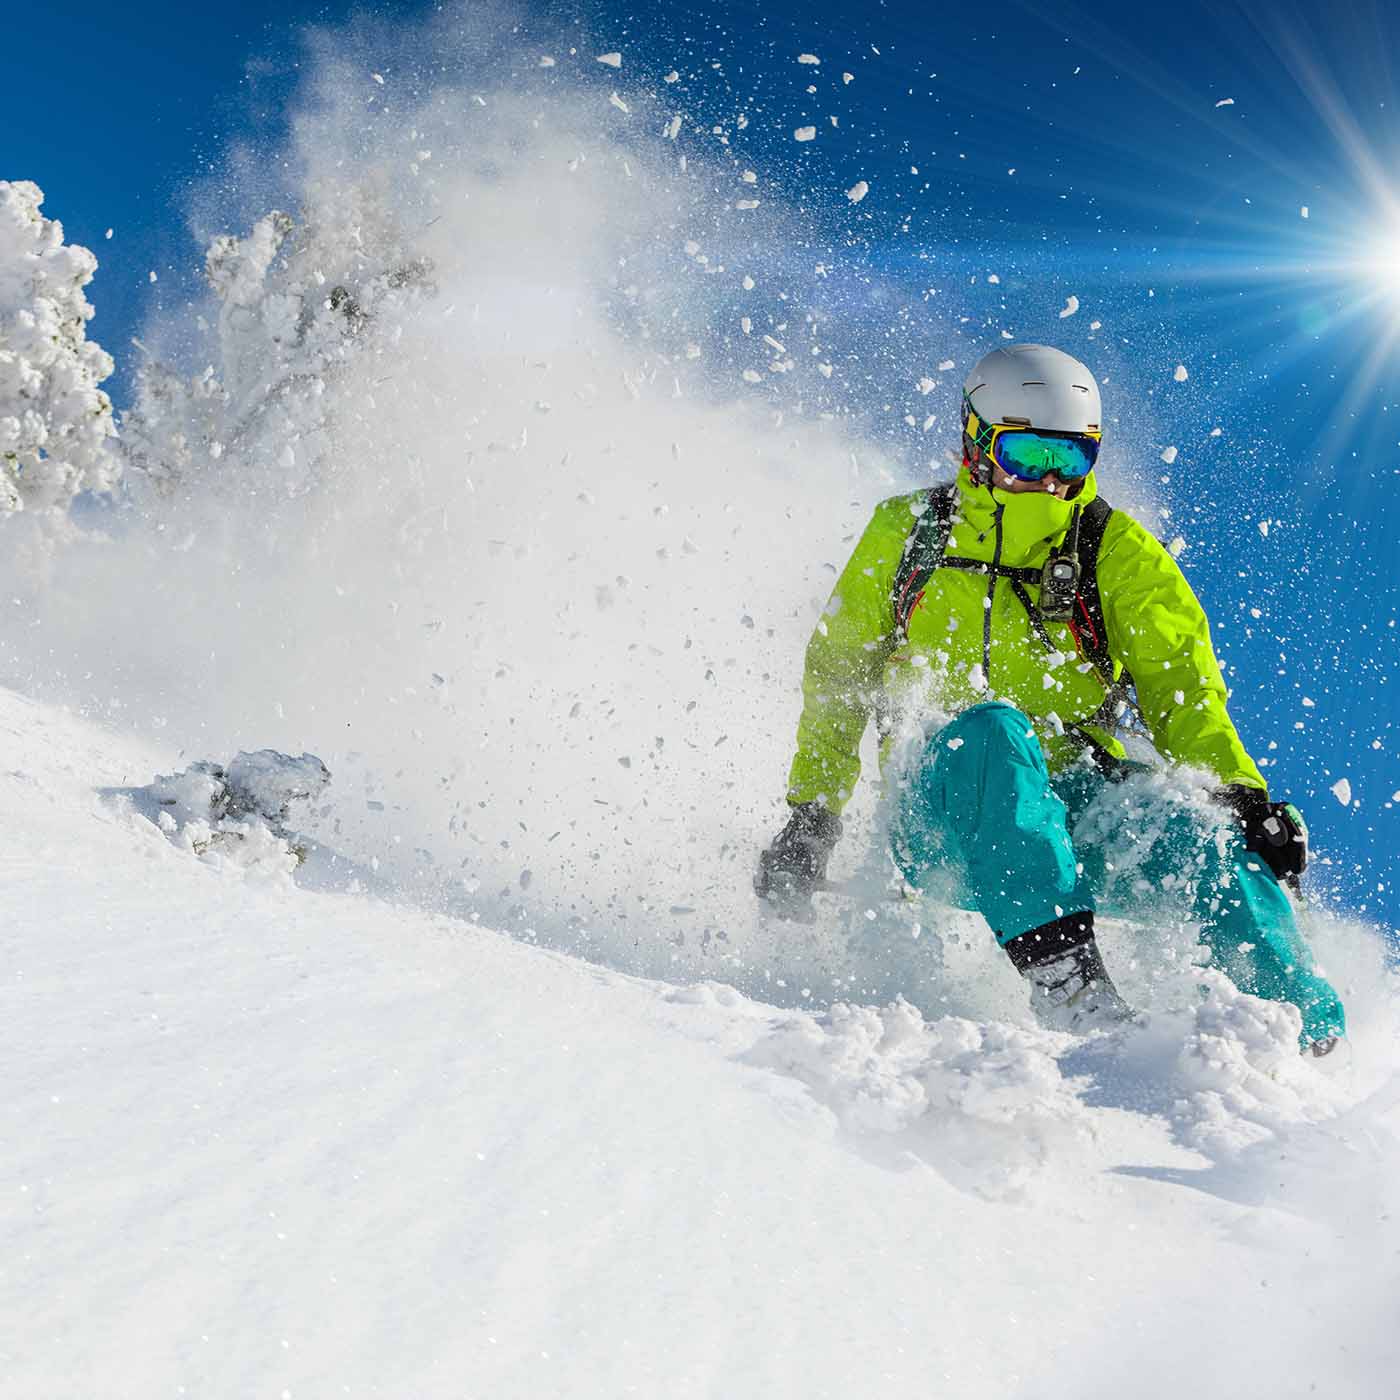 Skier hitting powder